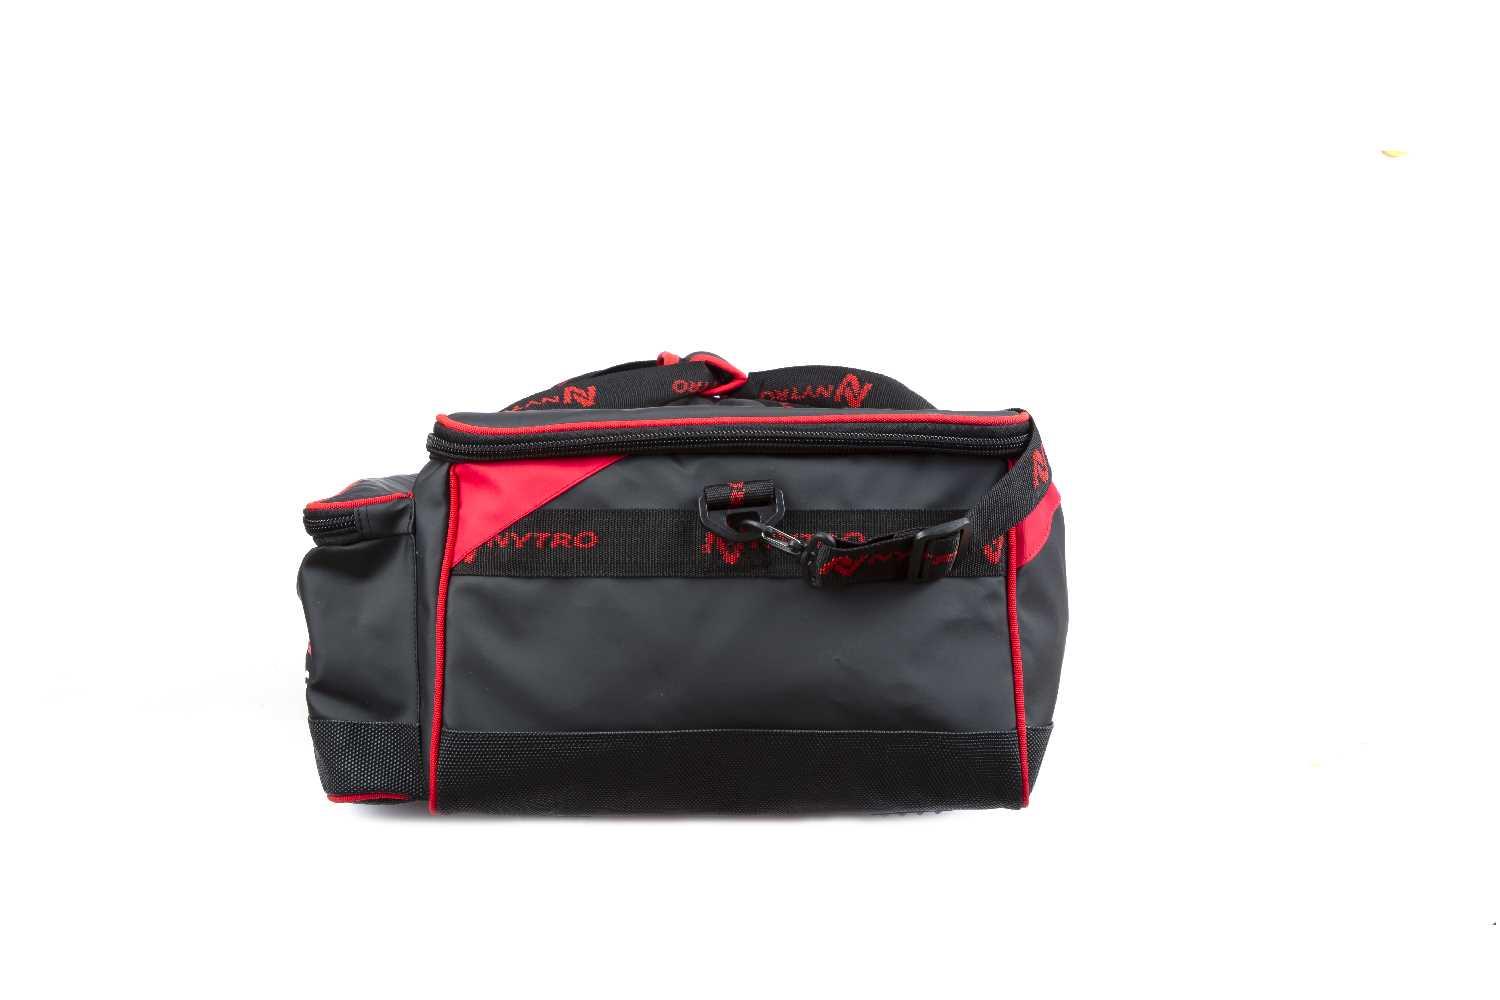 Nytro Sublime Long Essentials Bag